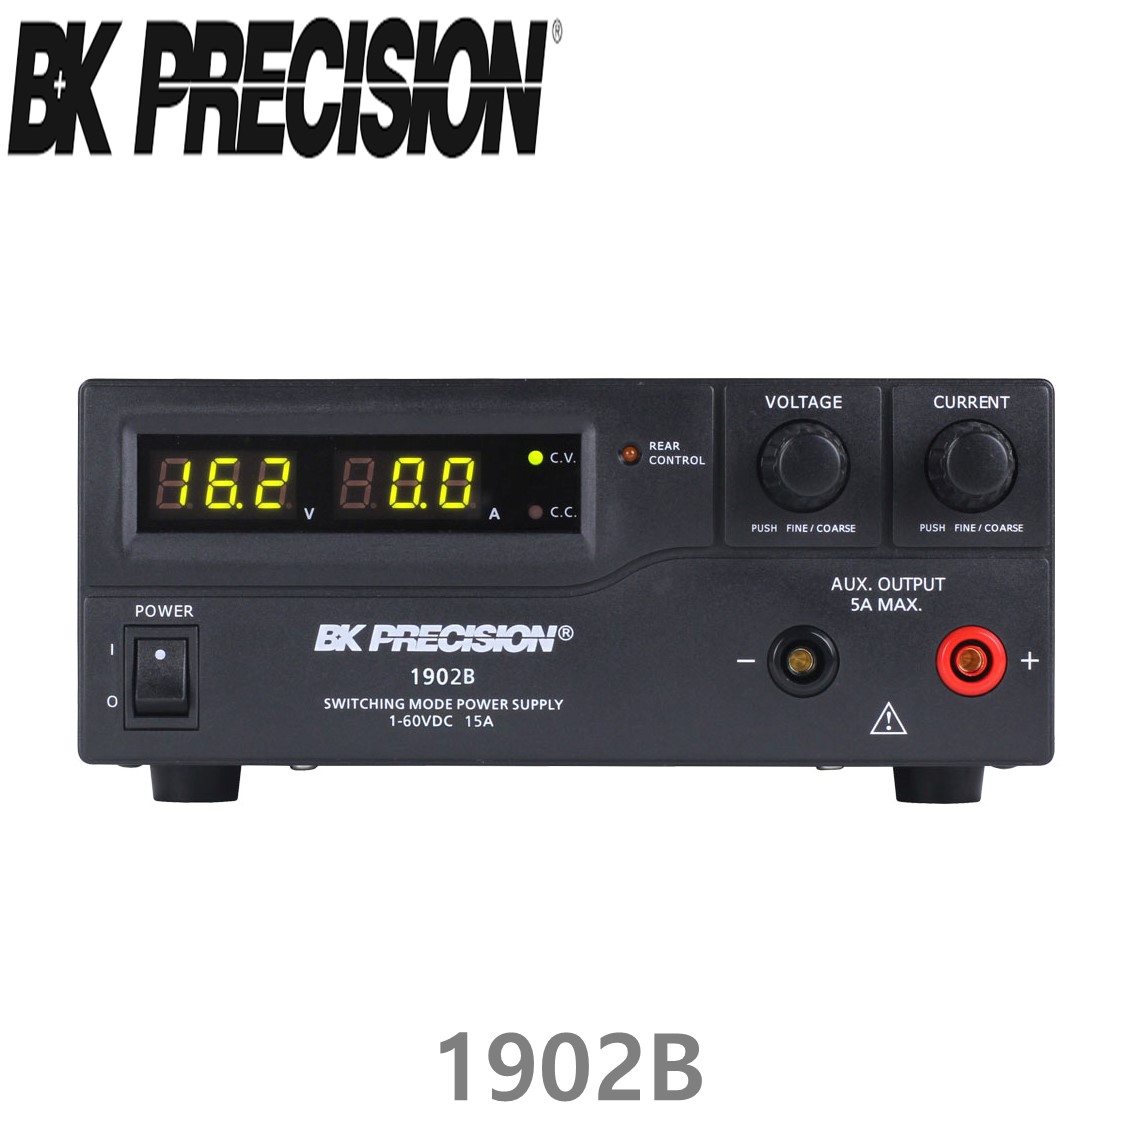 [ BK PRECISION ] BK 1902B, 60V/15A, Switching DC Power Supply, USB interface, DC 전원공급기, B&K 1902B